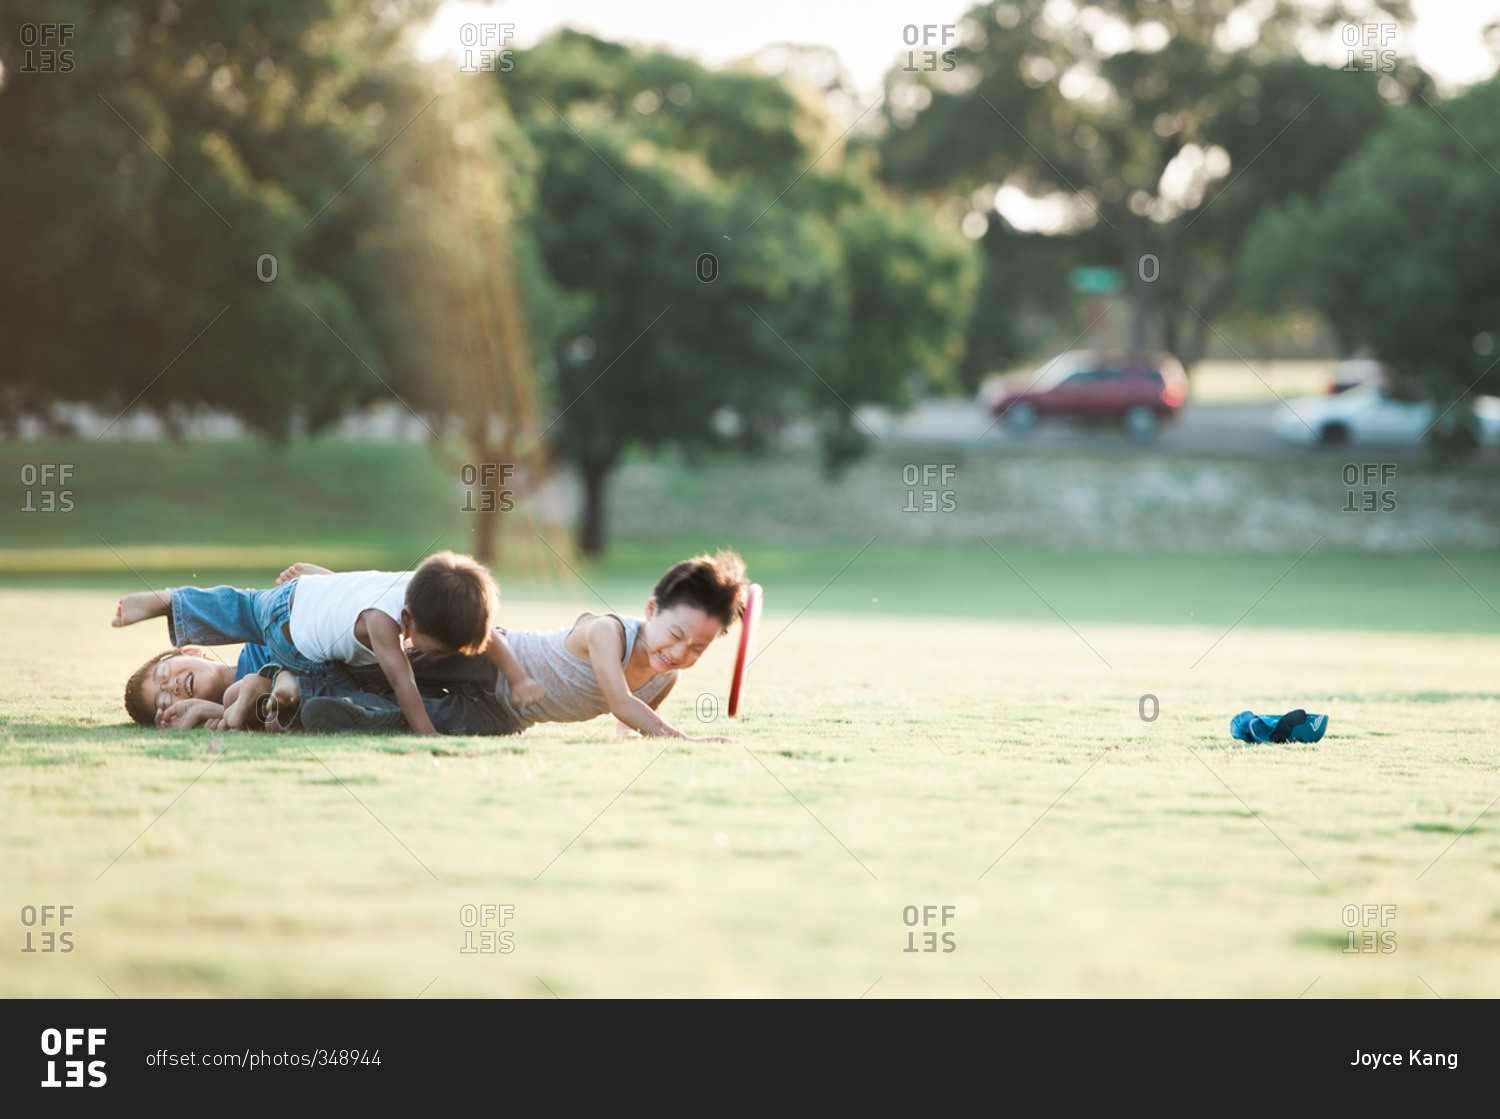 Two little boys wrestling in a field